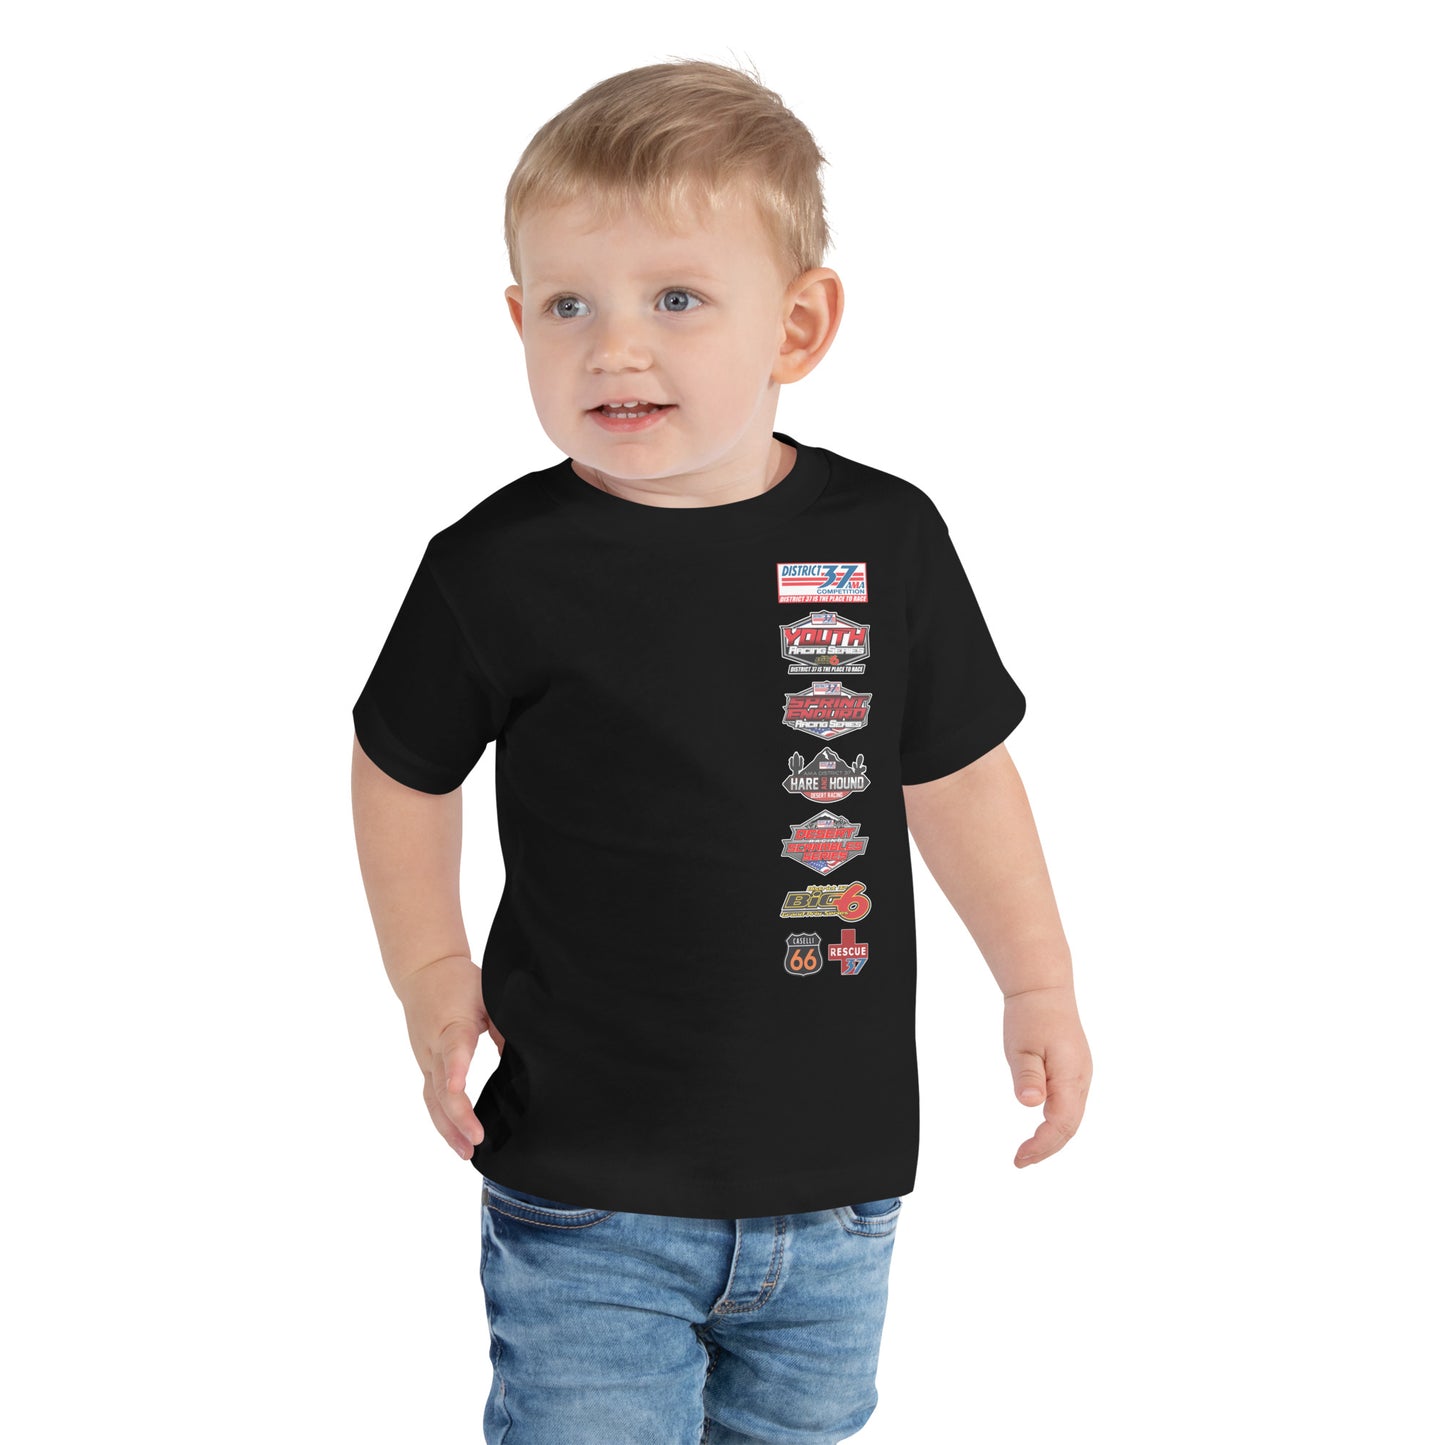 D37 Hare & Hound Series Shirt - Toddler Size Shirt